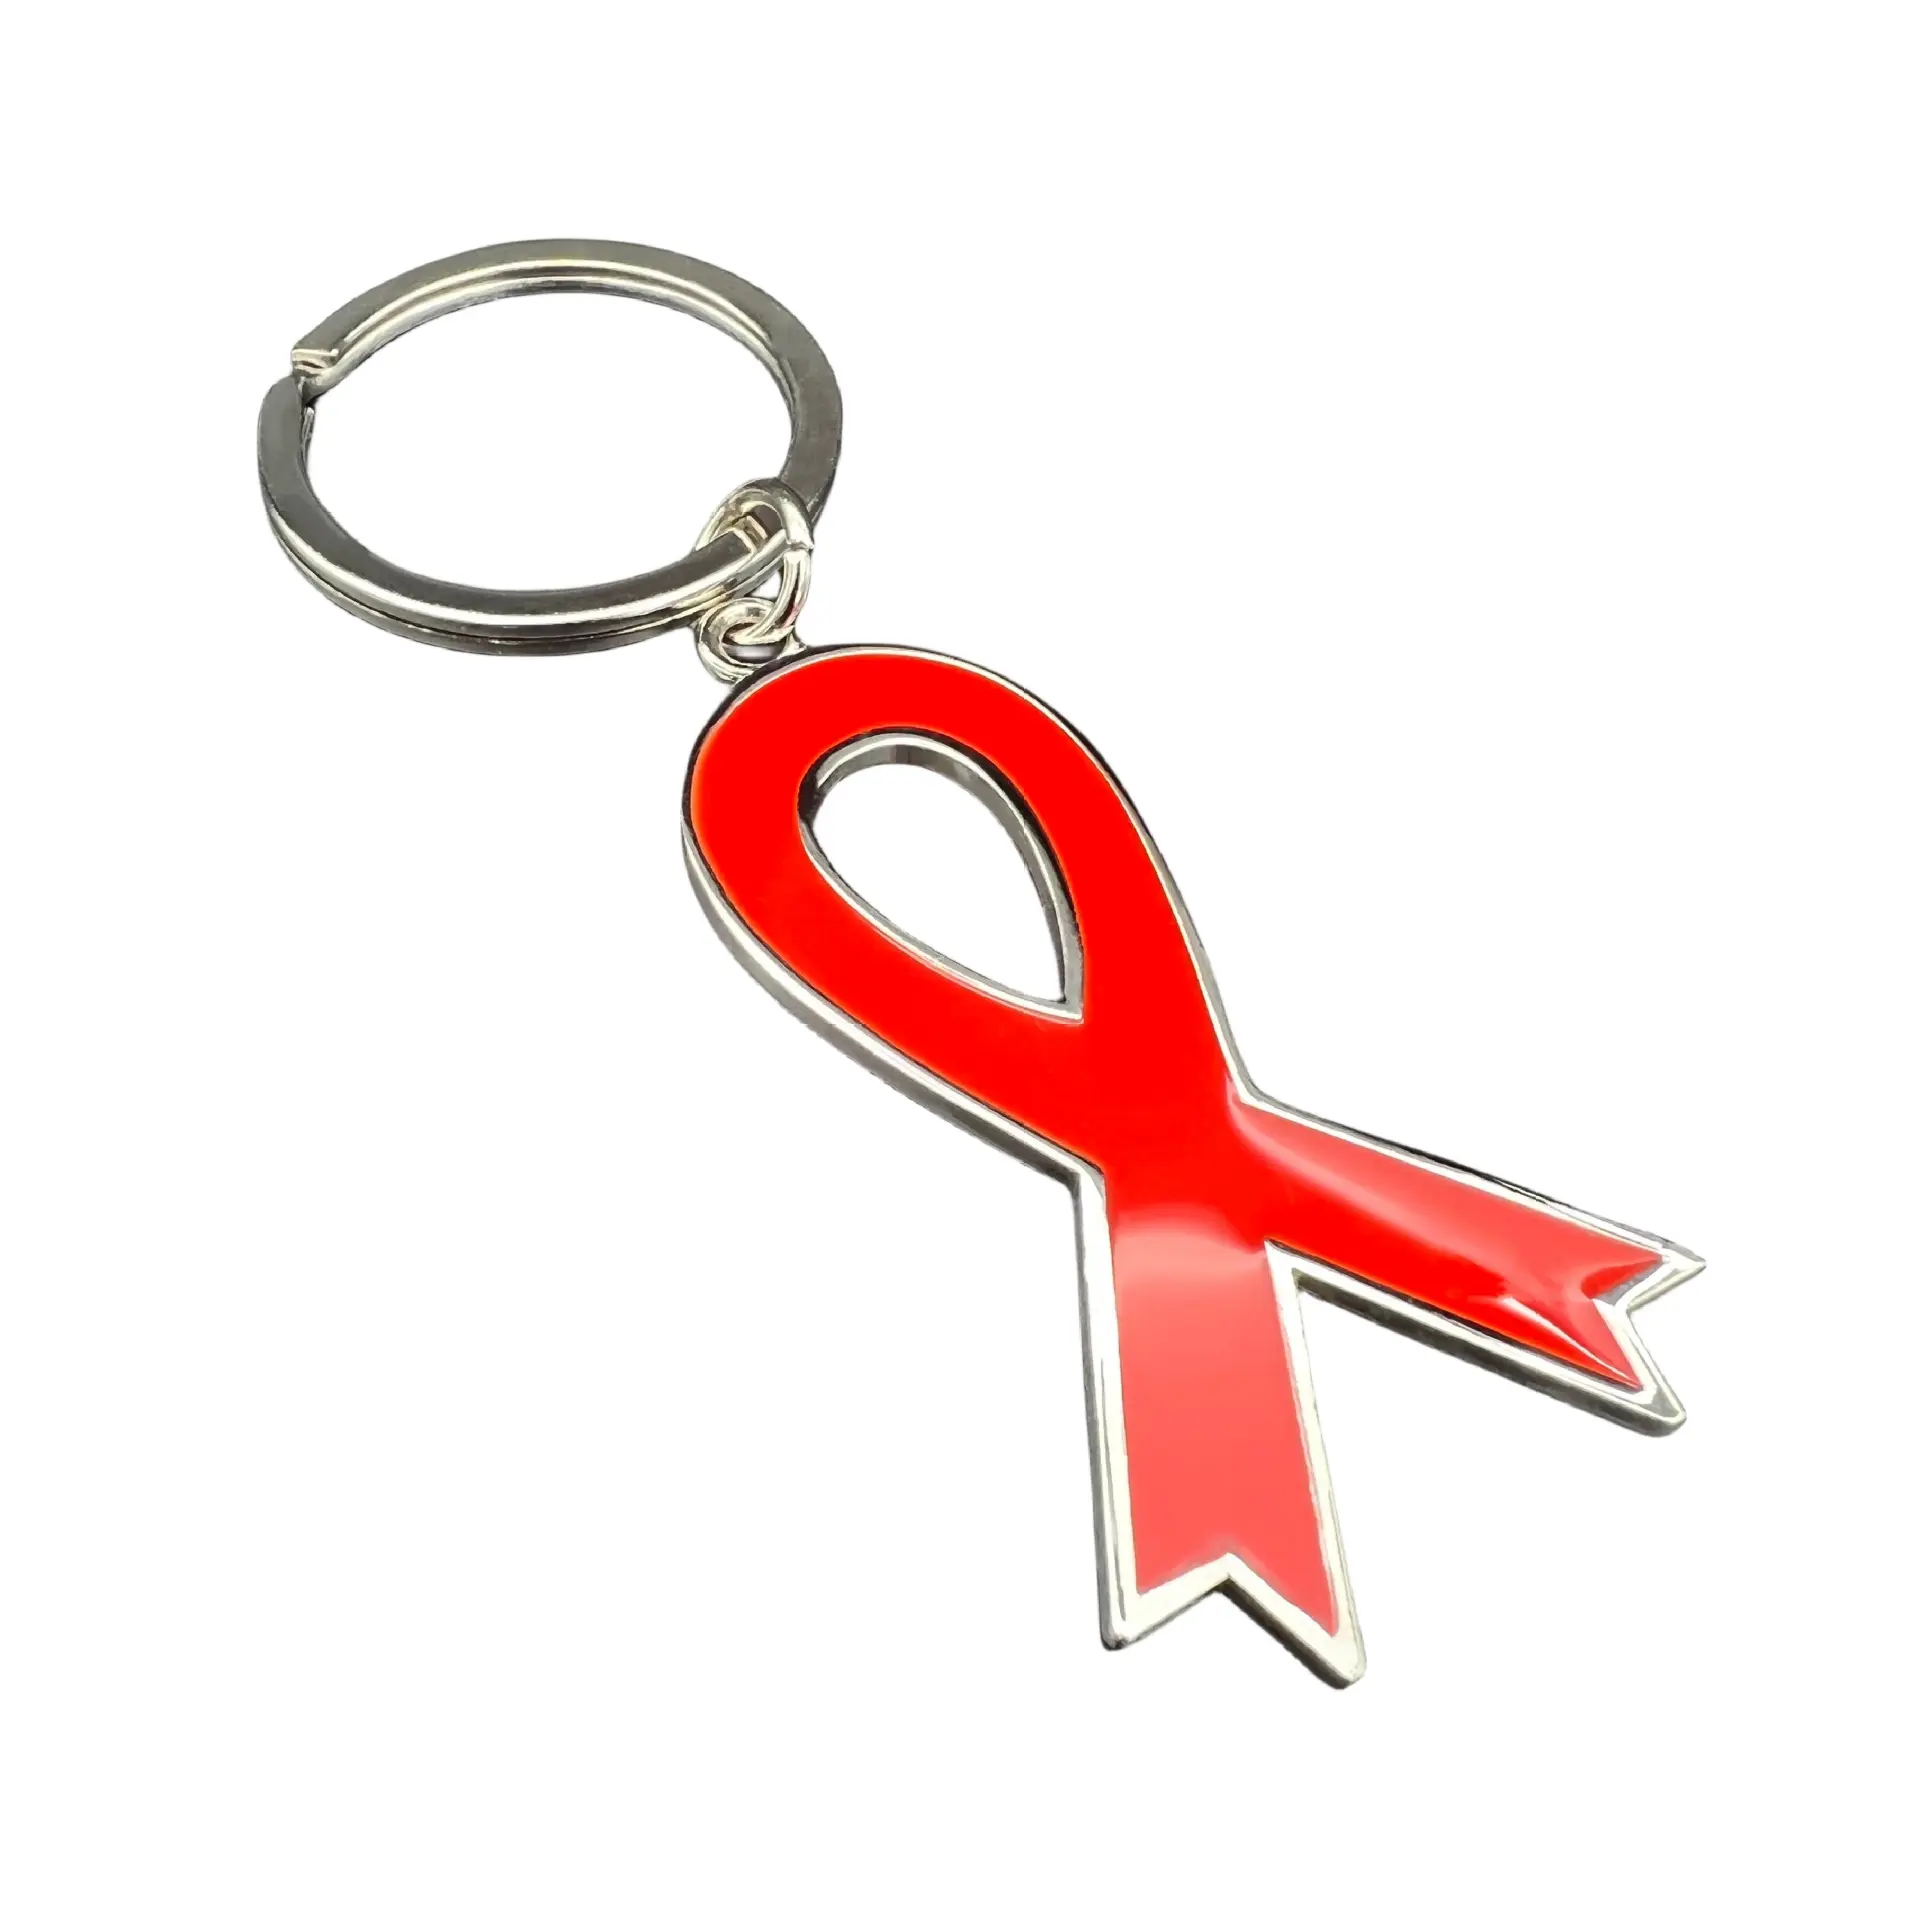 RENHUI cancer du sein ruban métrique porte-clés porte-clés personnalisé porte-clés en métal porte-clés